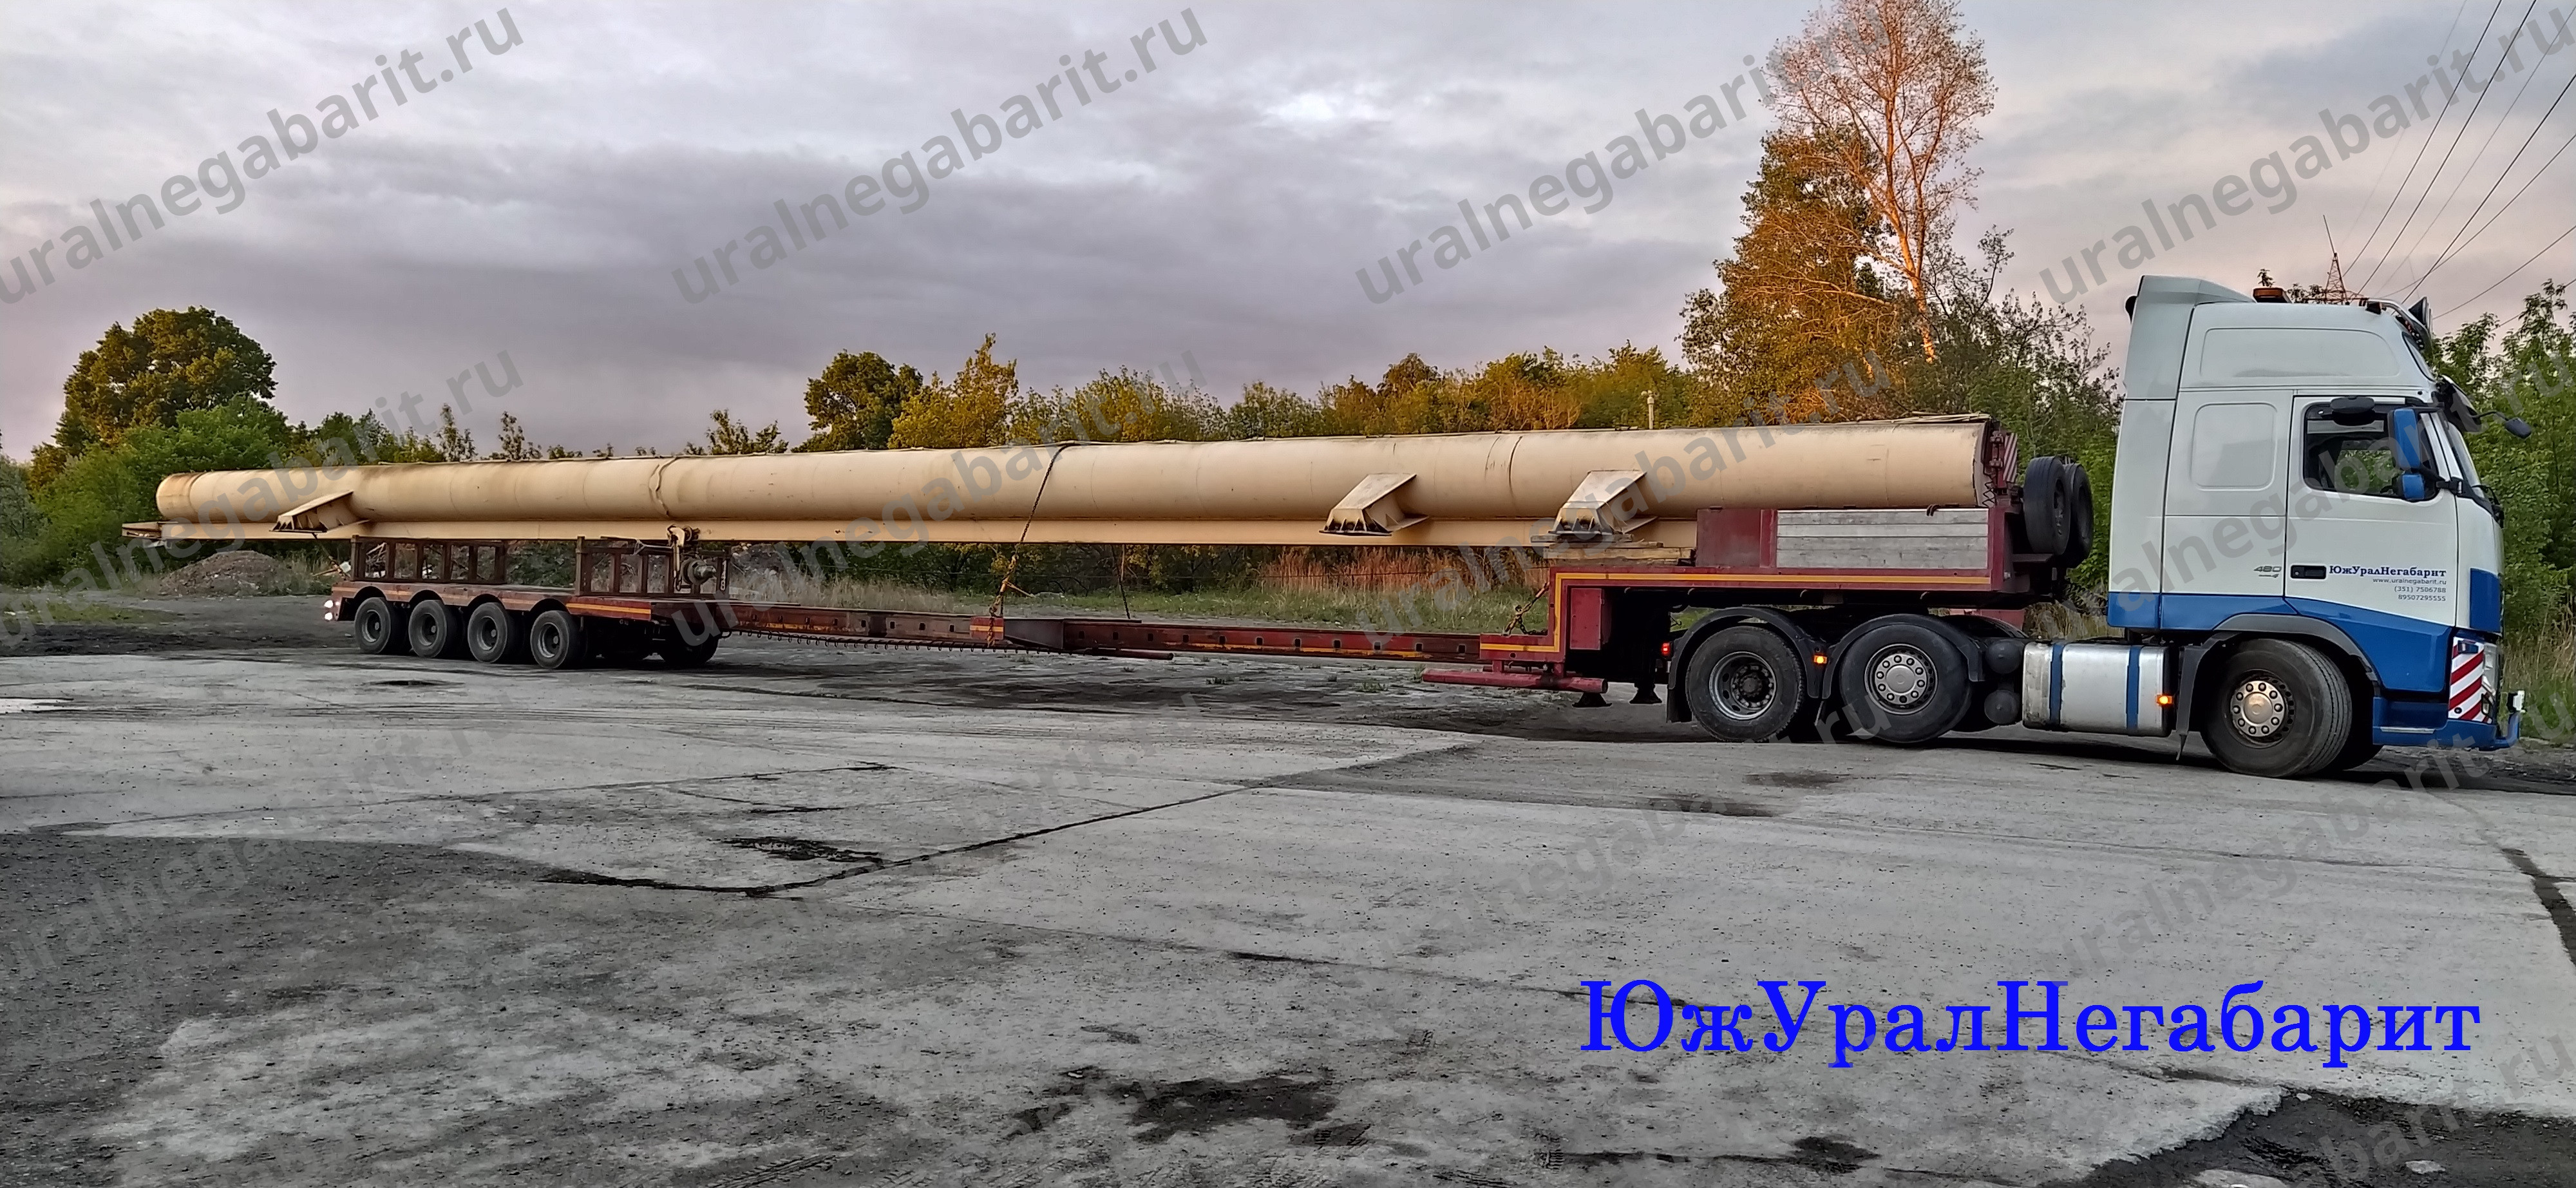 ЮжУралНегабарит перевозка крановой балки длиной 32 метра.jpg